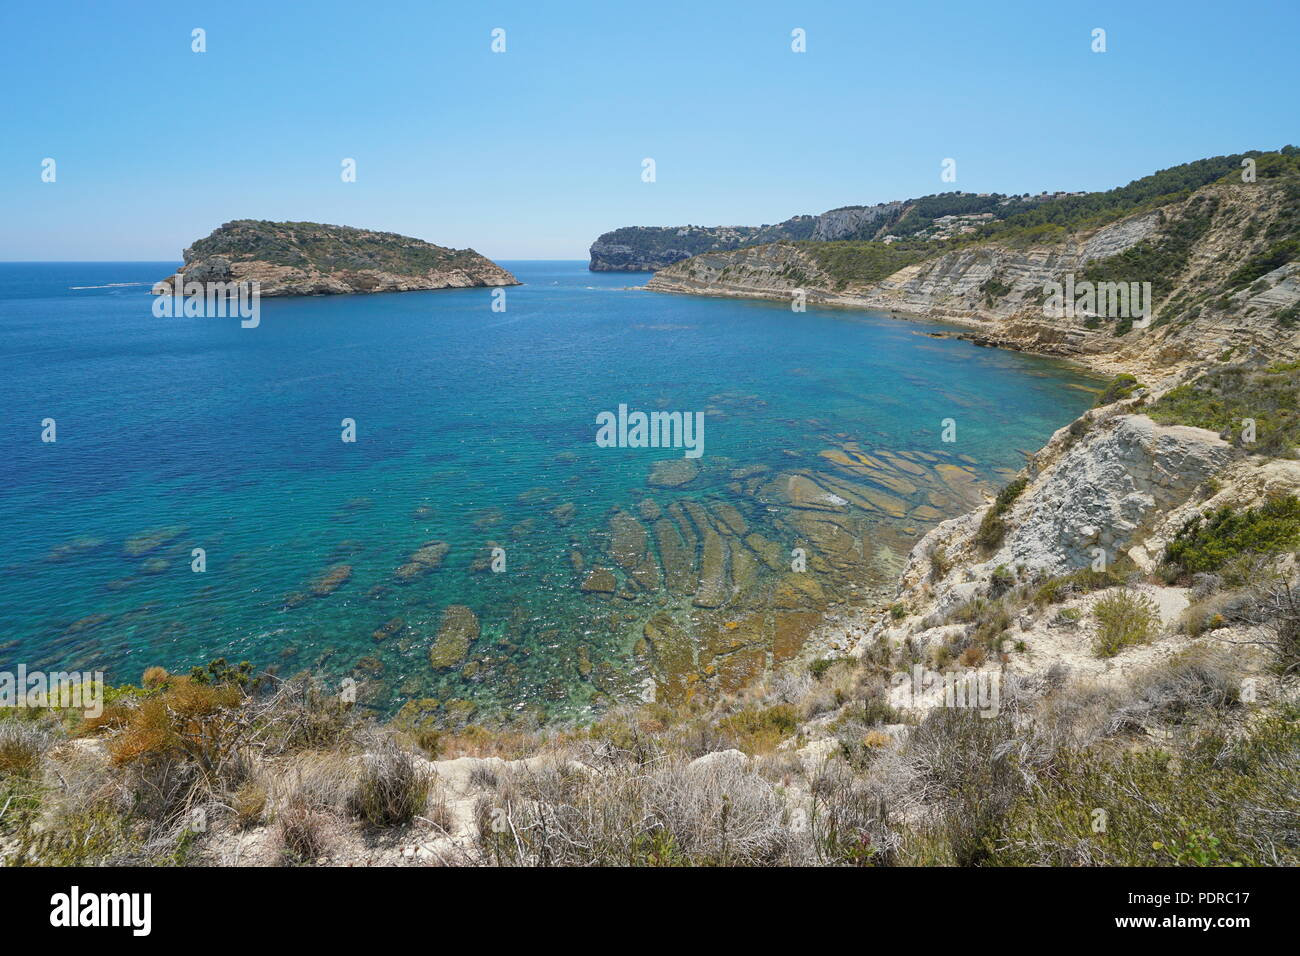 Espagne Costa Blanca côte rocheuse avec une île à Javea, Illa del Portitxol, mer Méditerranée, Alicante, Valence Banque D'Images